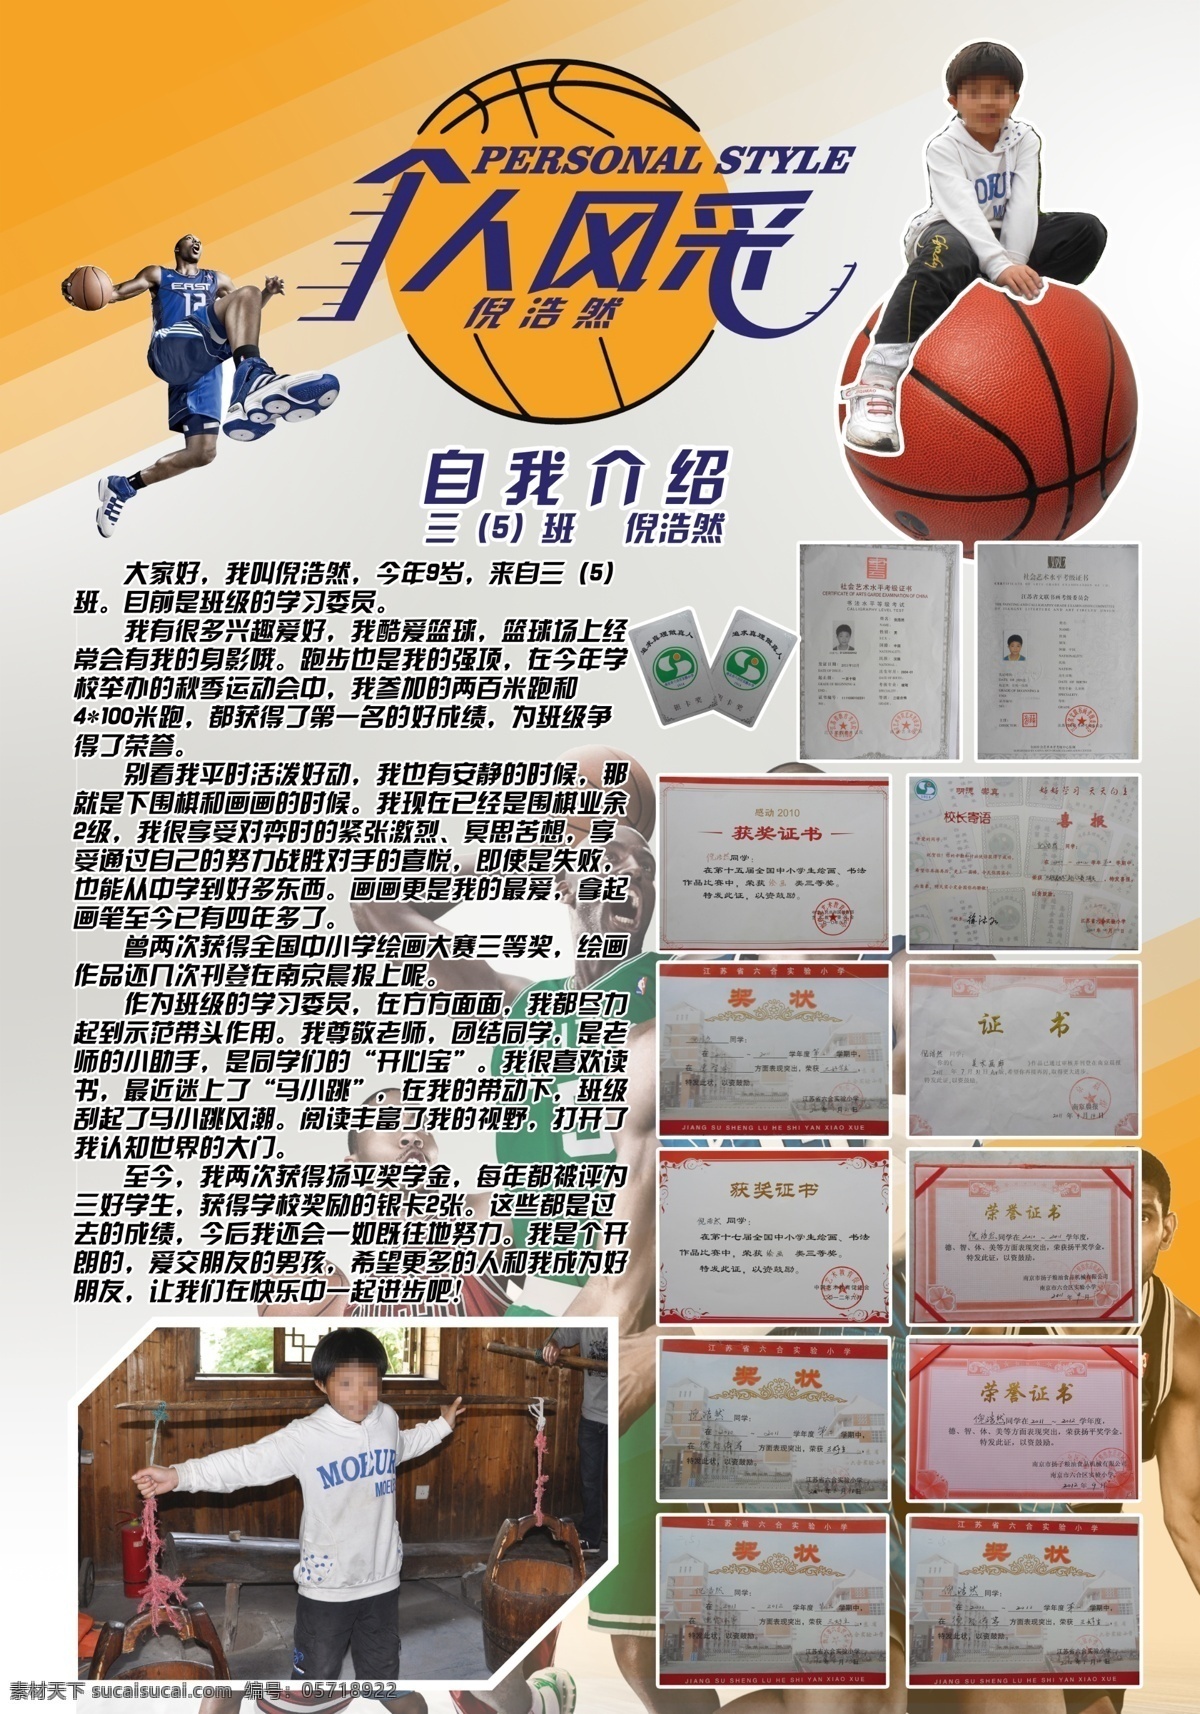 篮球 小学生 个人 风采 湖人队 个人风采 优秀 自我介绍 广告设计模板 源文件